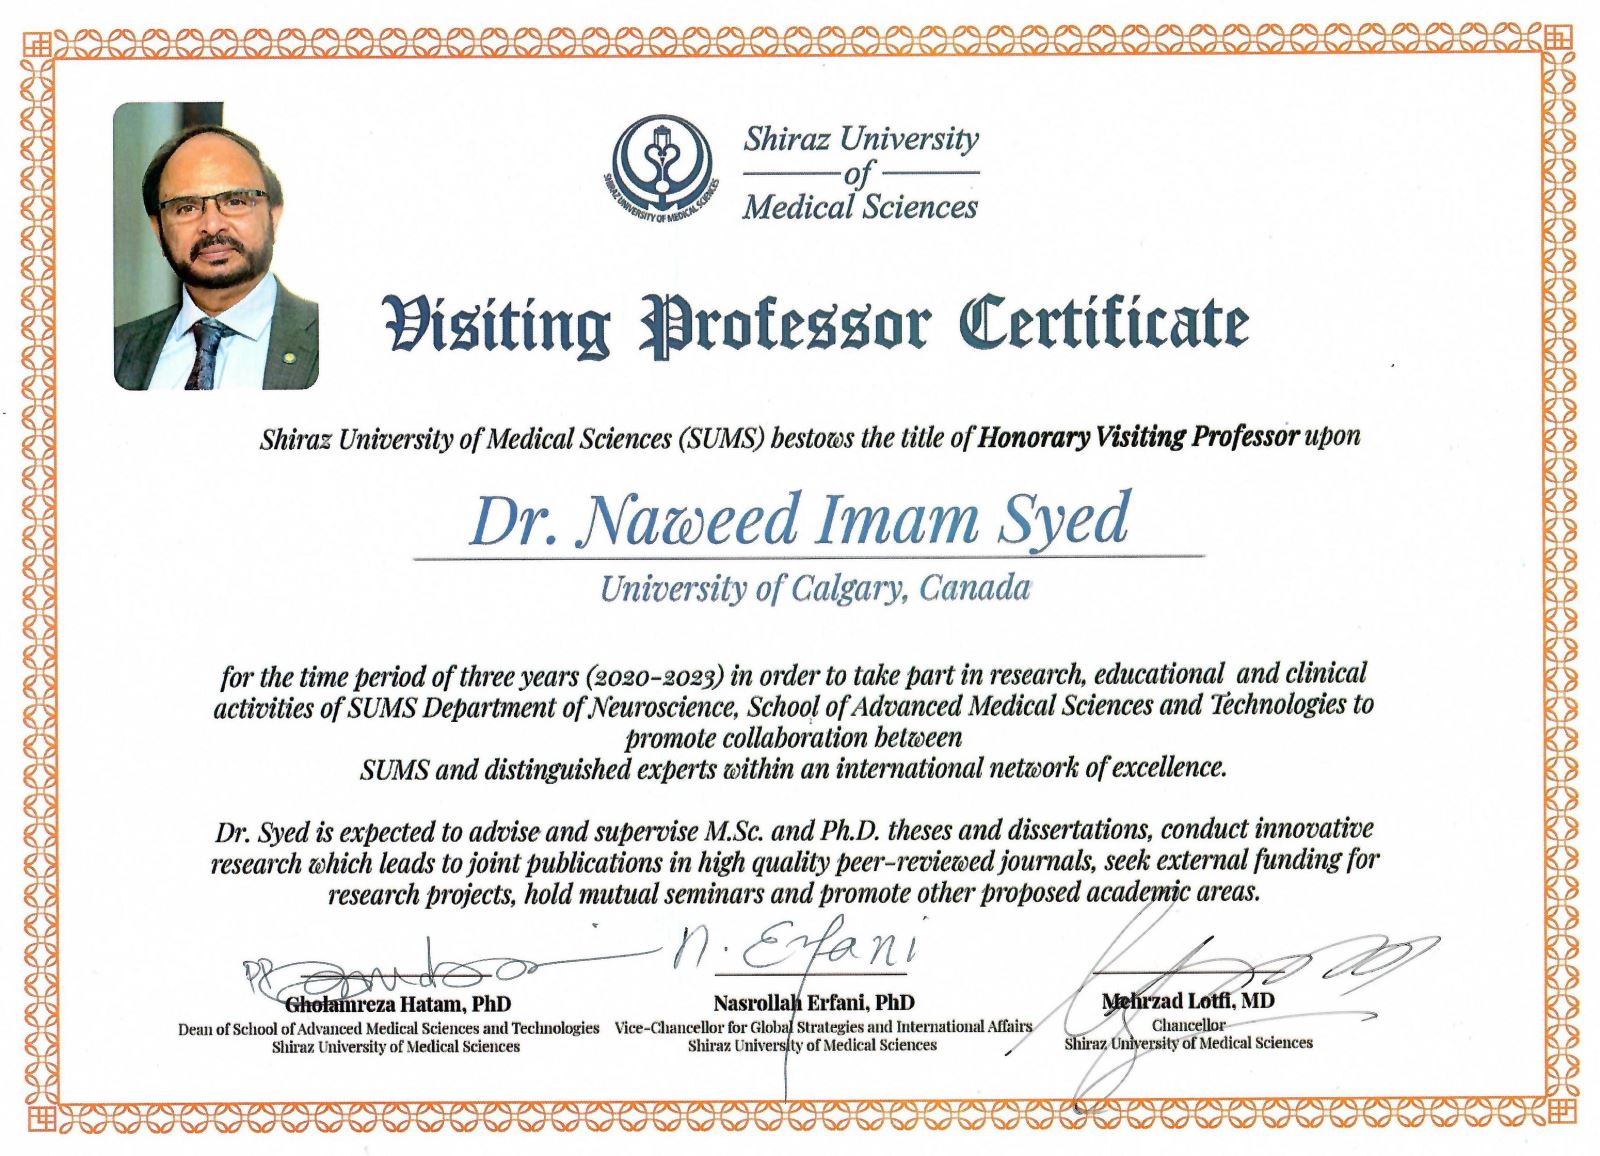 Dr. Naweed Imam Syed